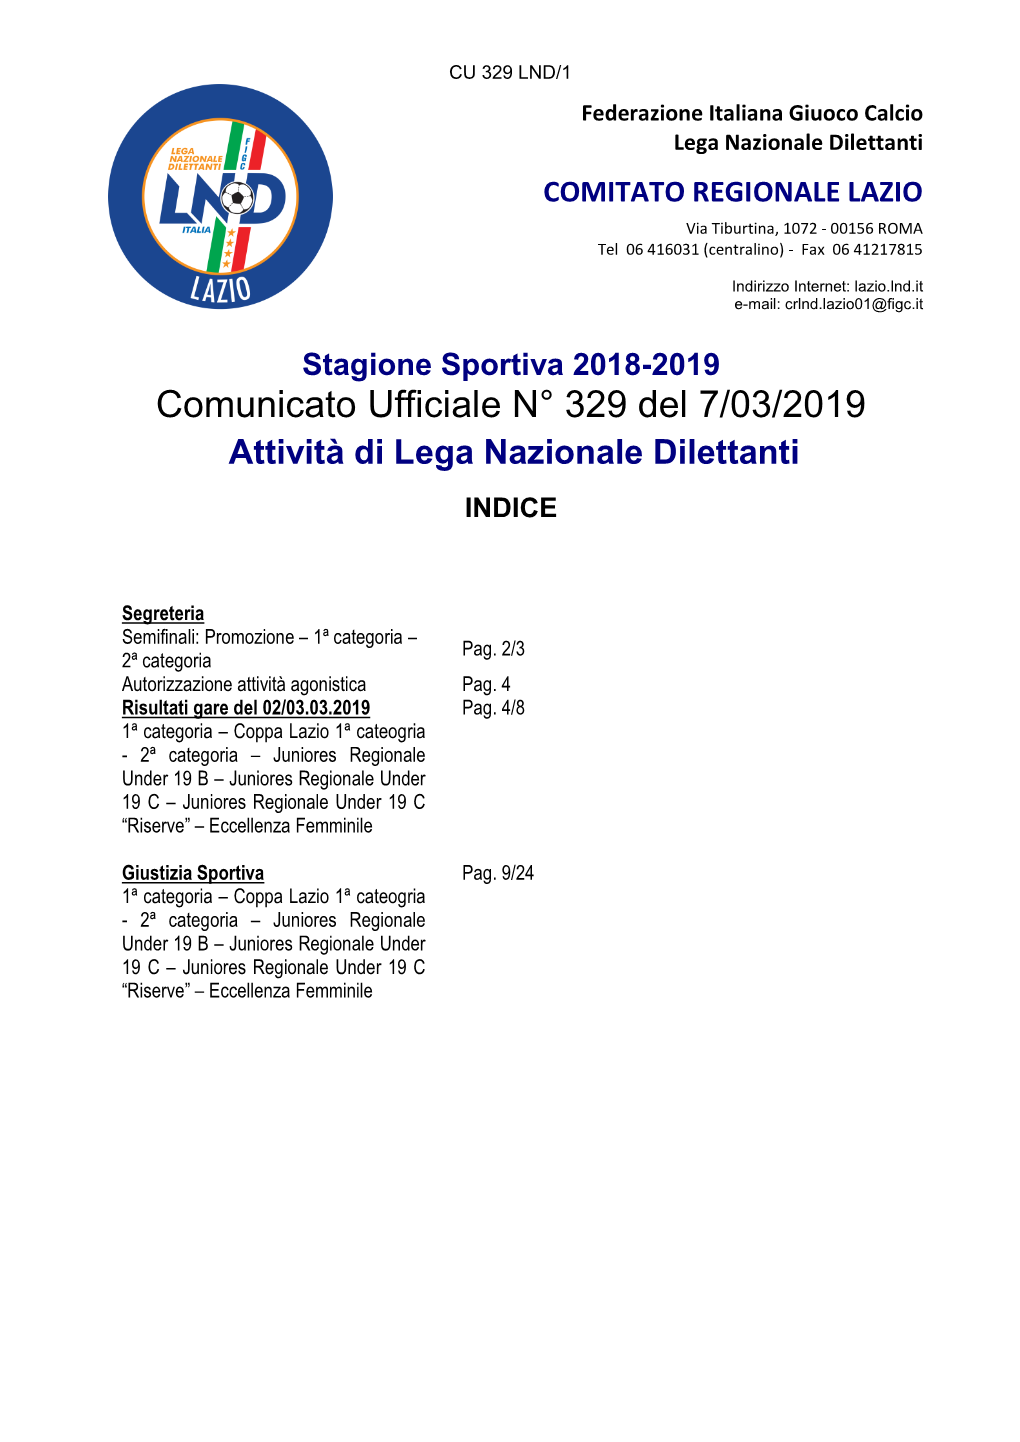 Comunicato Ufficiale N° 329 Del 7/03/2019 Attività Di Lega Nazionale Dilettanti INDICE